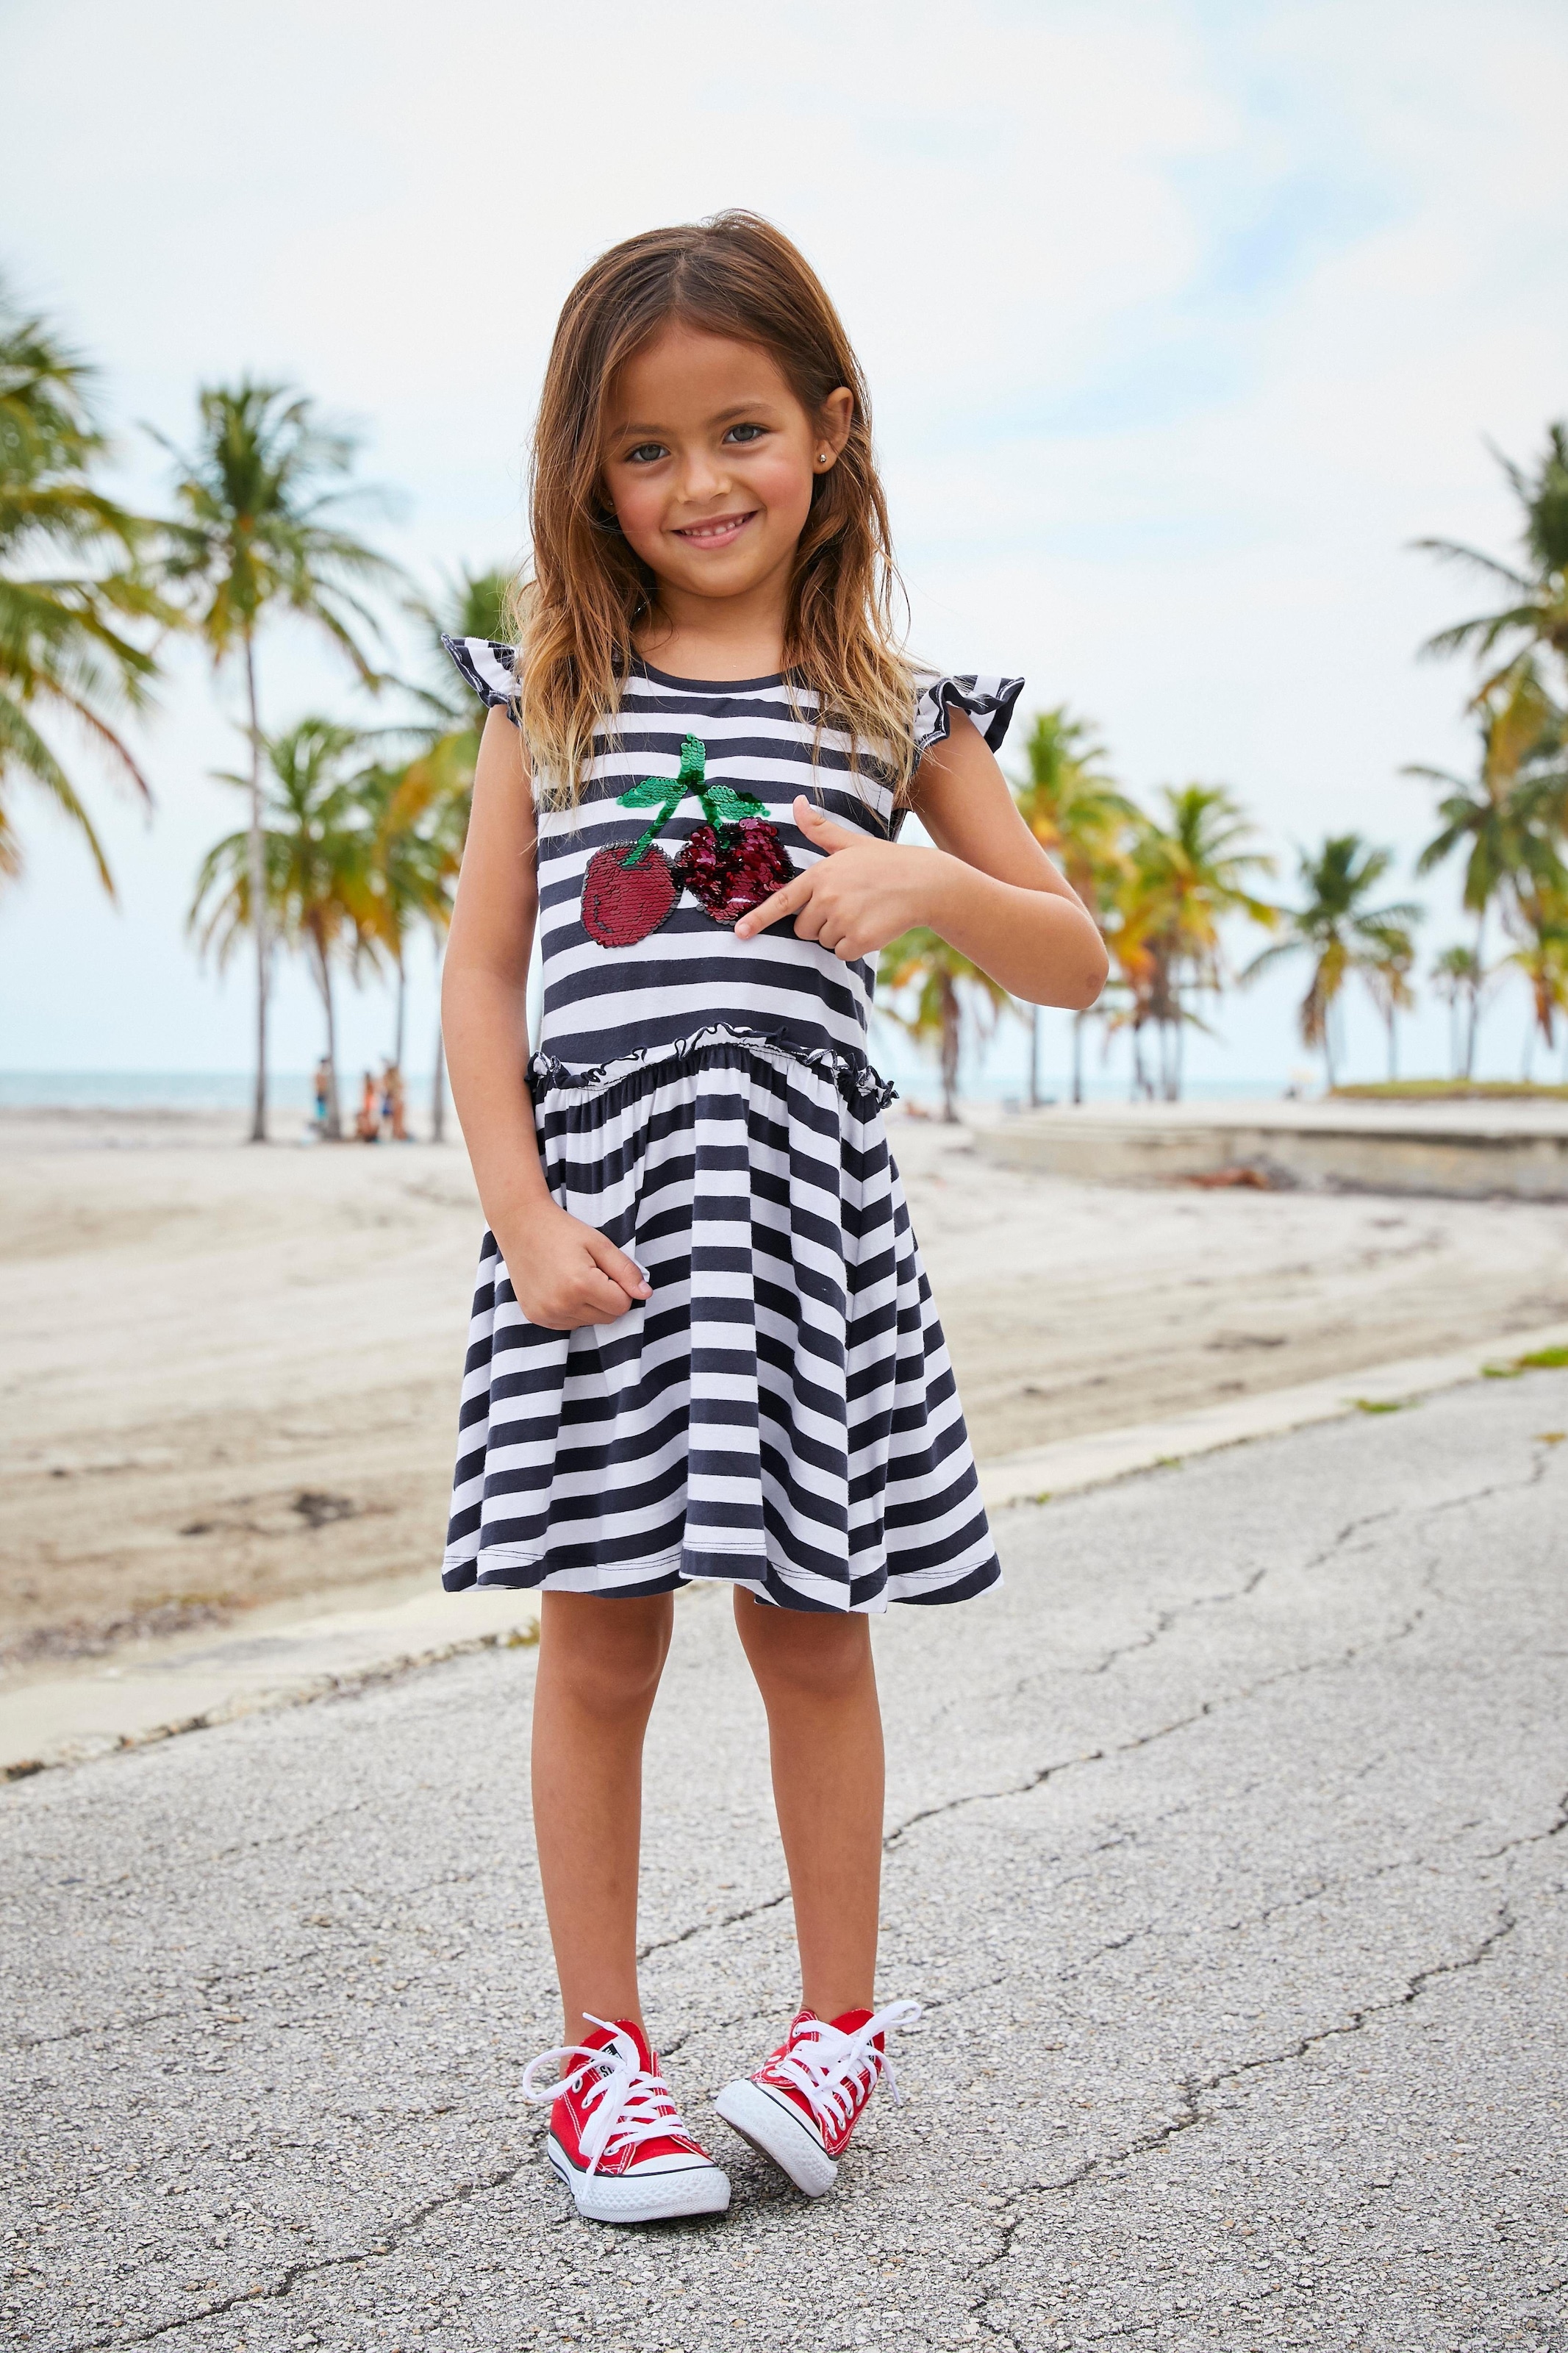 KIDSWORLD Jerseykleid »für kleine Mädchen«, mit Wendepailletten